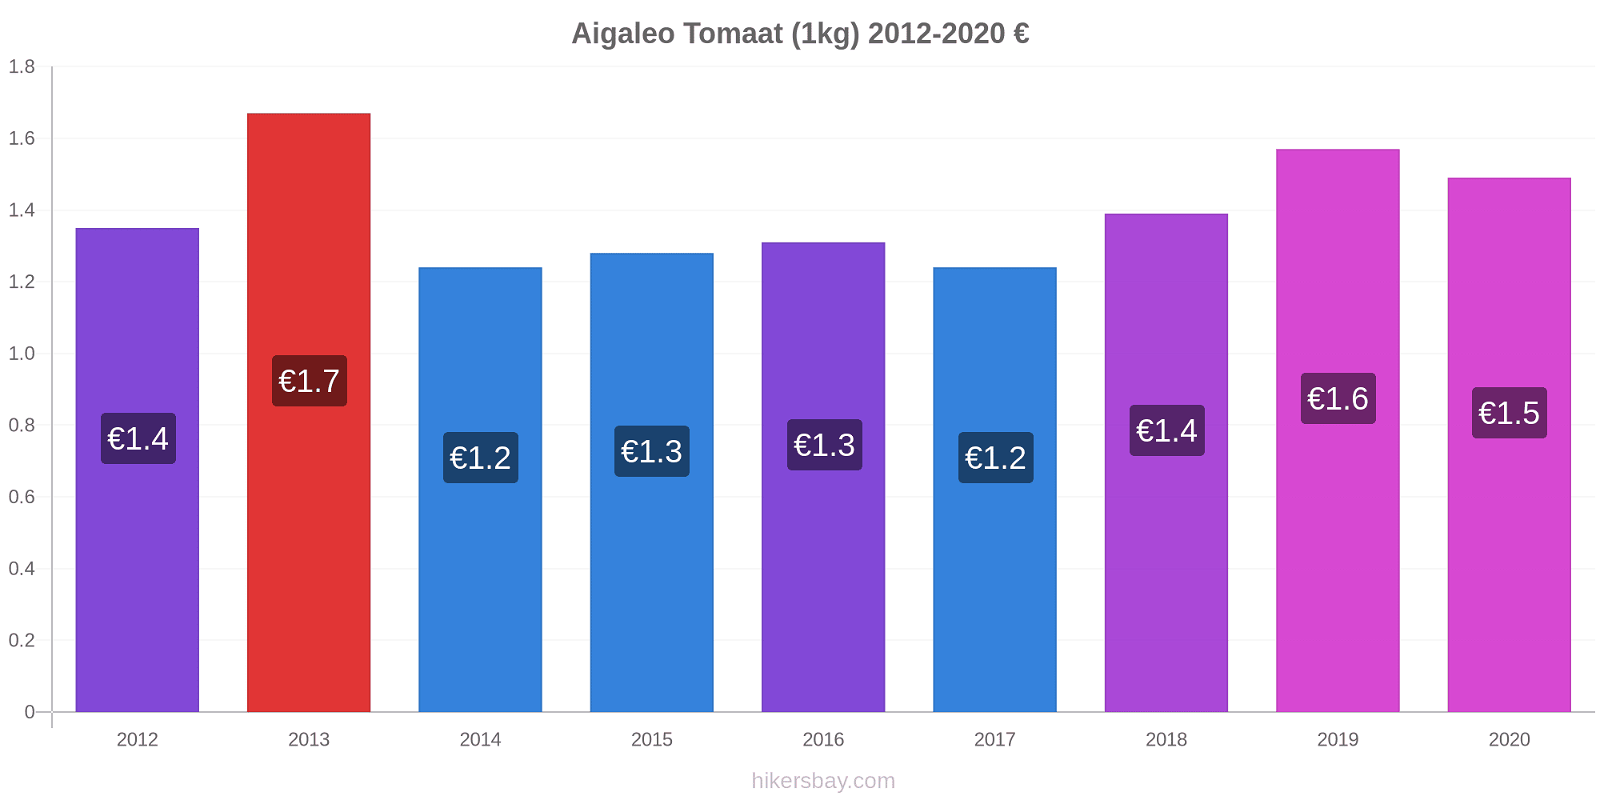 Aigaleo prijswijzigingen Tomaat (1kg) hikersbay.com